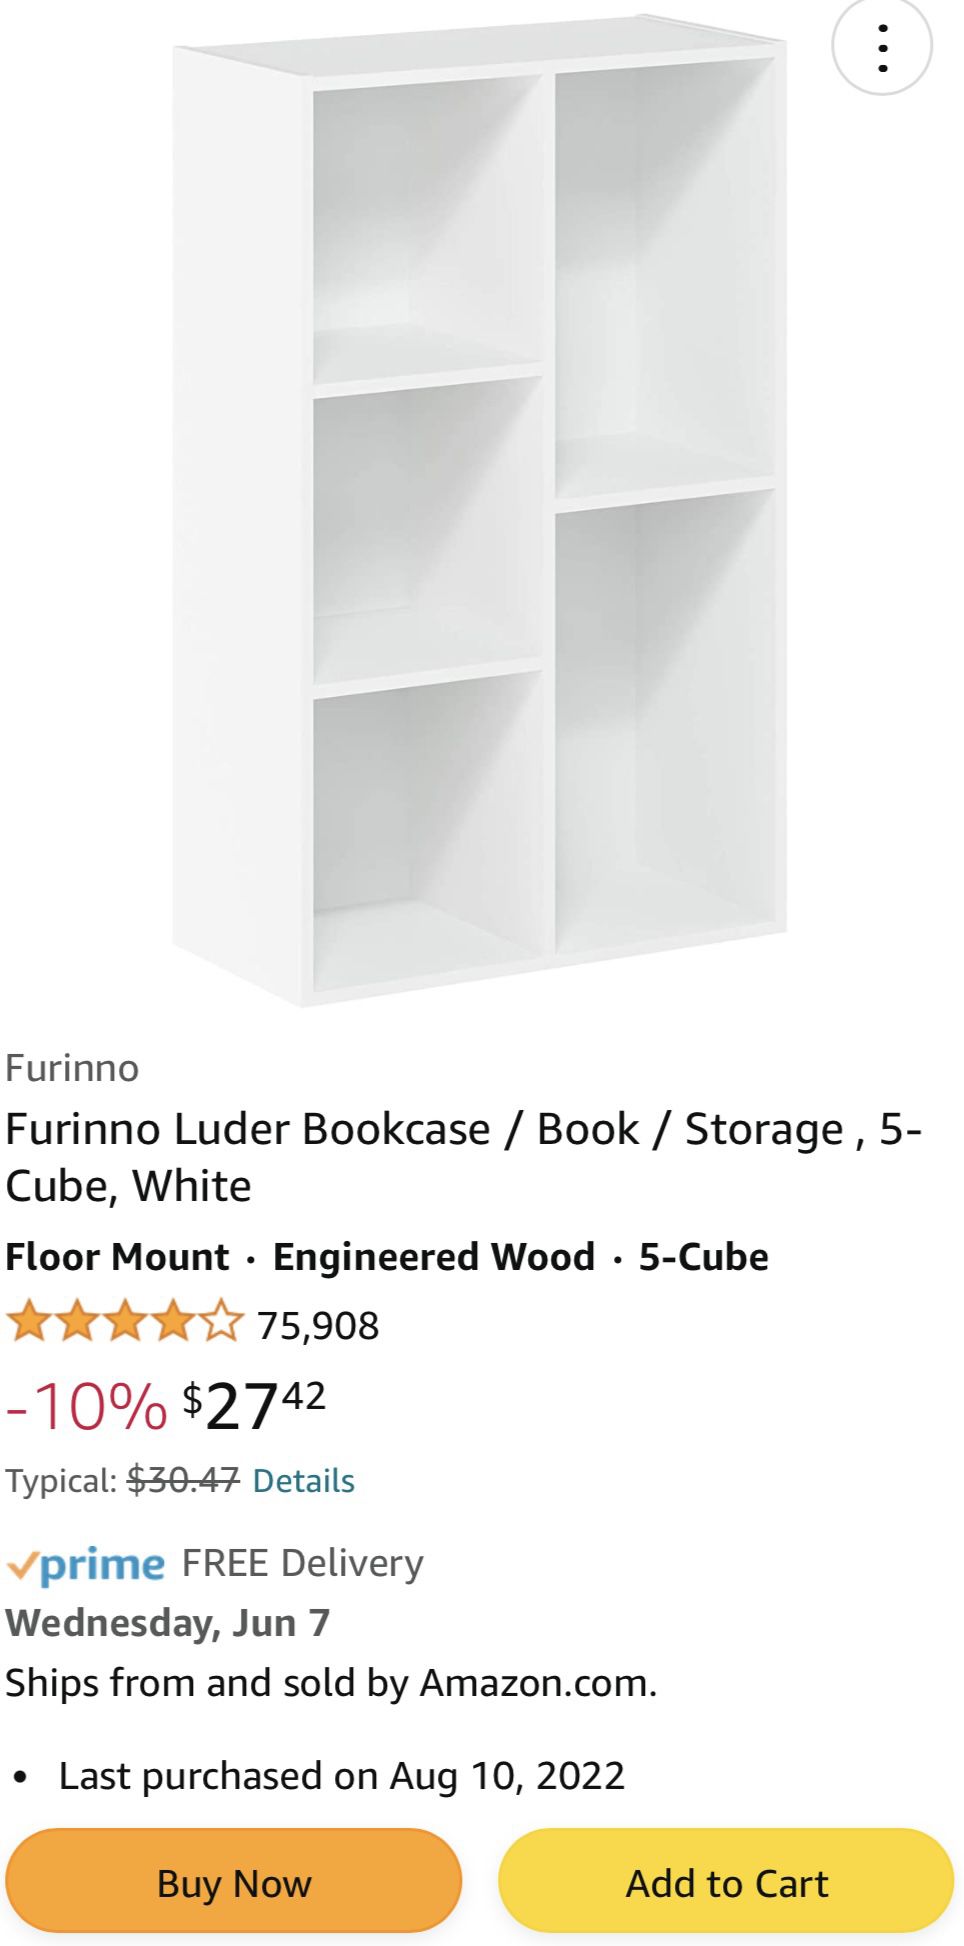 Two Amazon Bookshelves